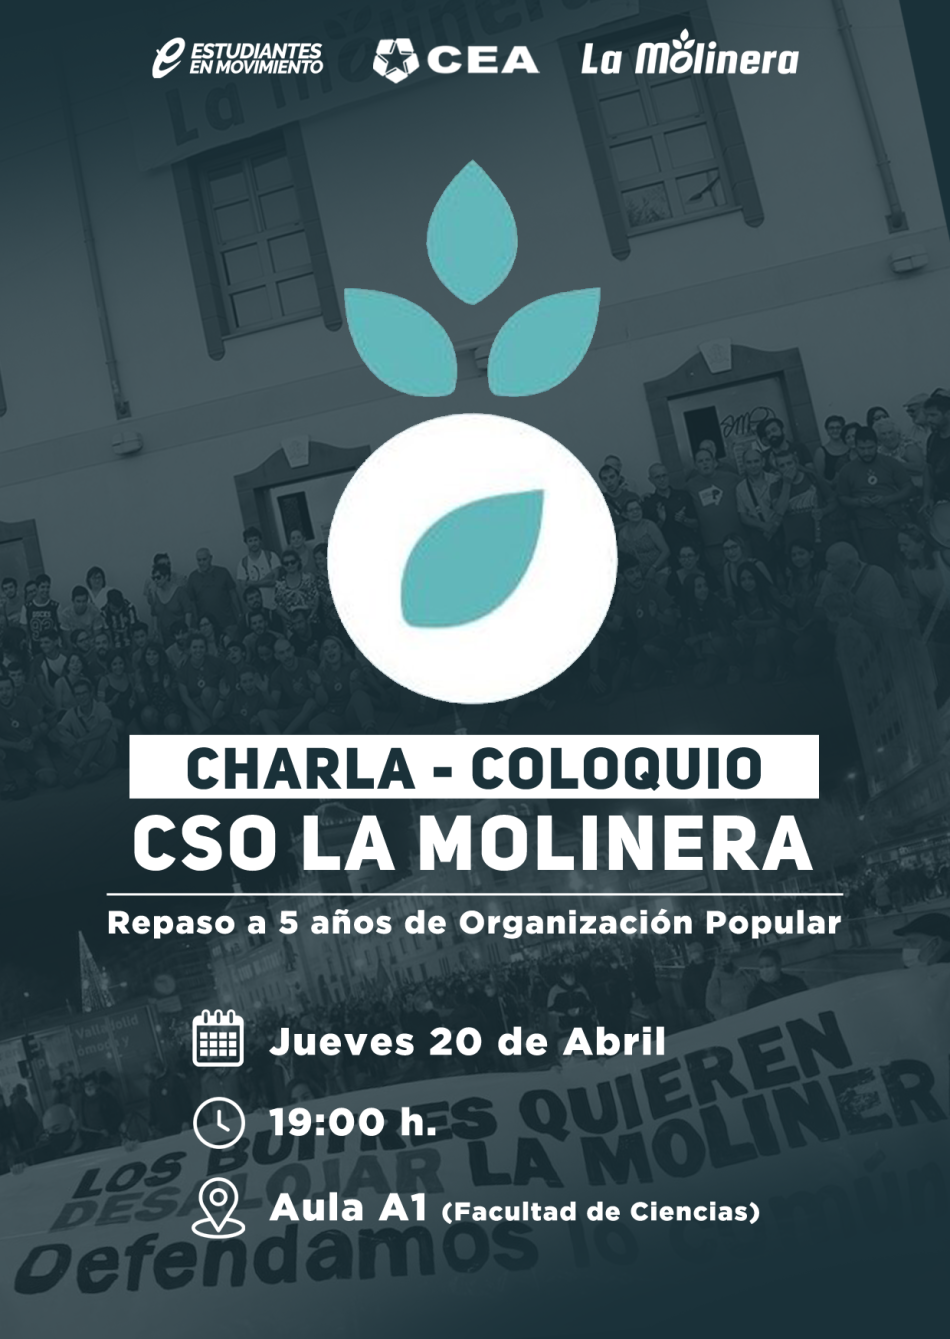 Colectivo Estudiantil Alternativo (CEA) organiza una charla – coloquio sobre el CSO La Molinera